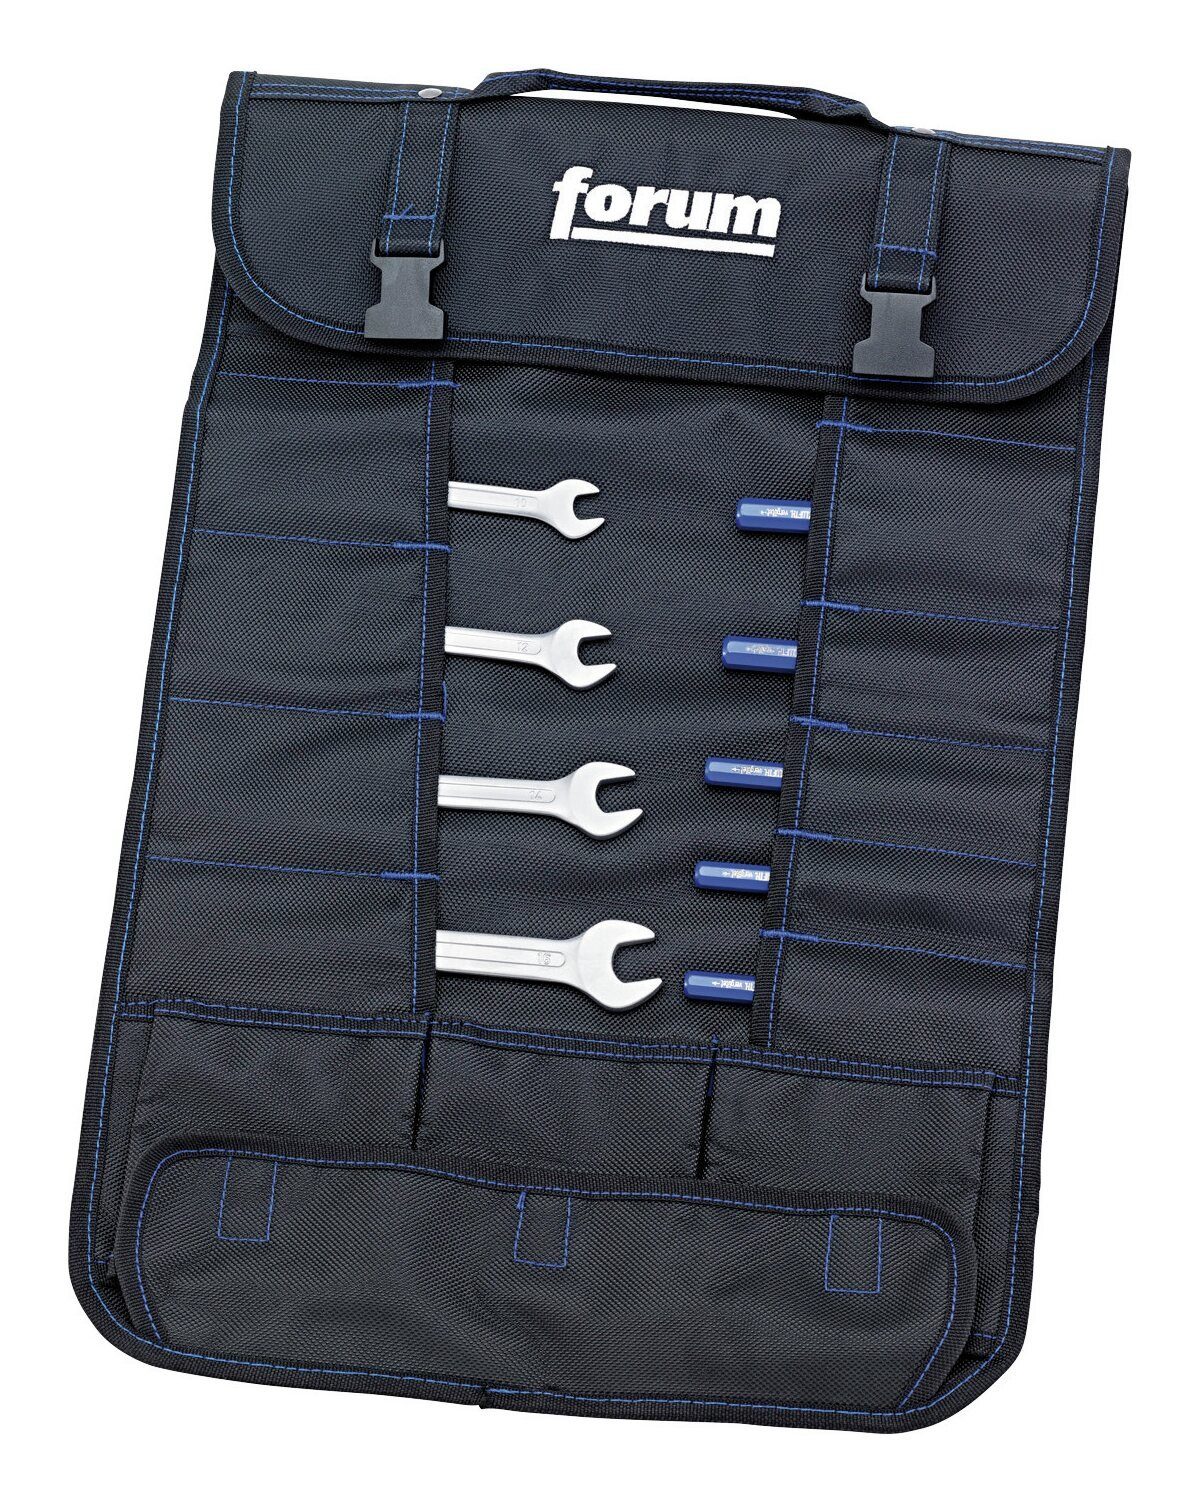 forum® Werkzeugtasche, Werkzeug-Rolltasche 21 Fächer, 3 Taschen